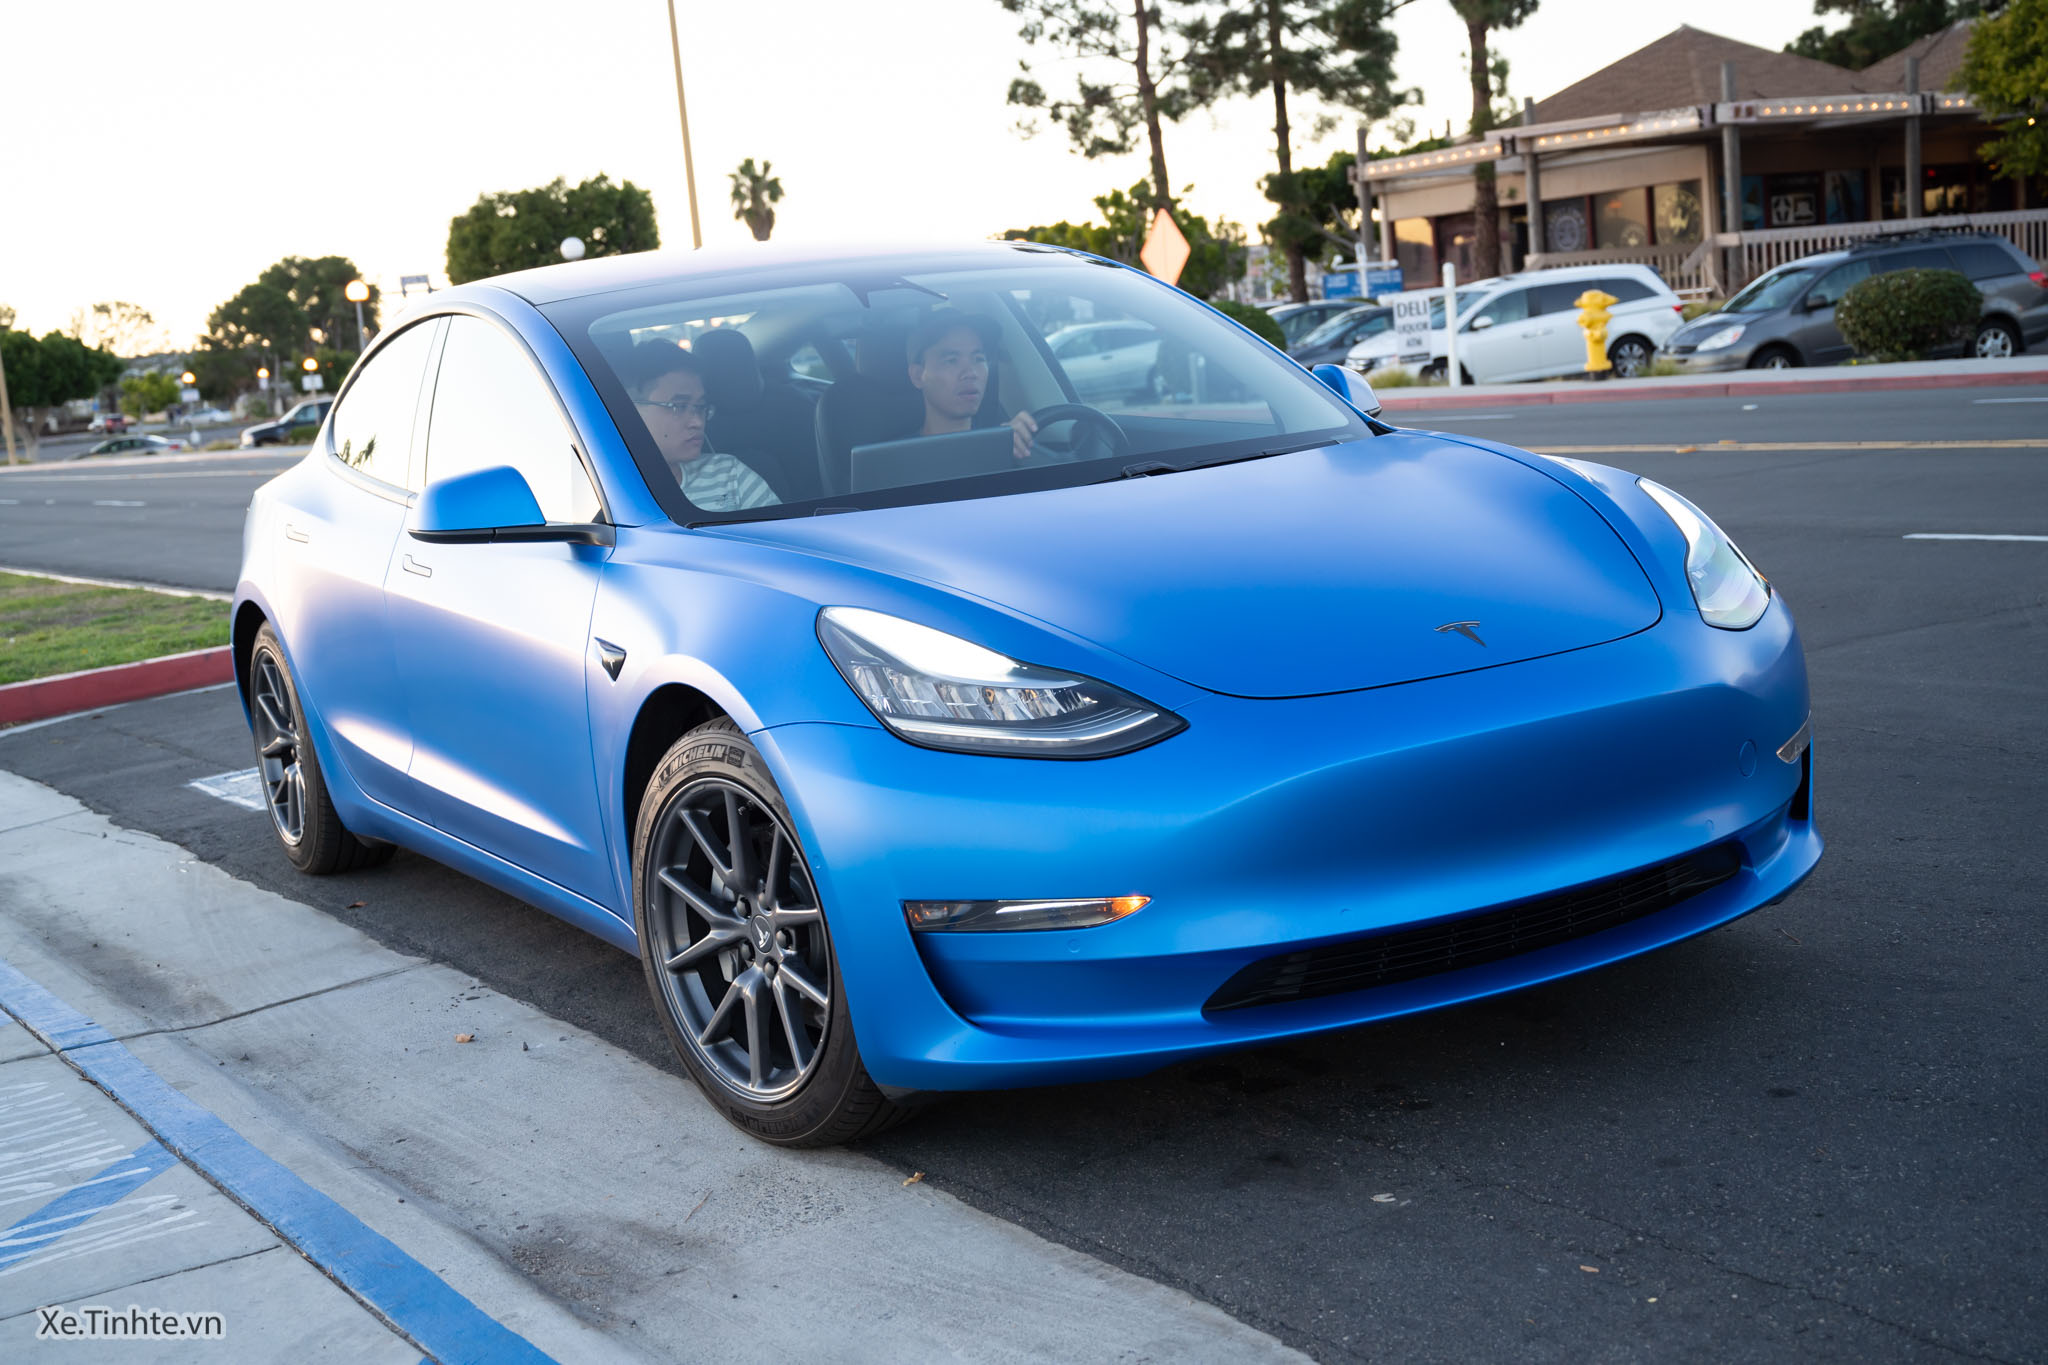 Top 15 hãng bán nhiều xe điện nhất ở Mỹ 2023: Tesla bán gấp 10 lần Chevy